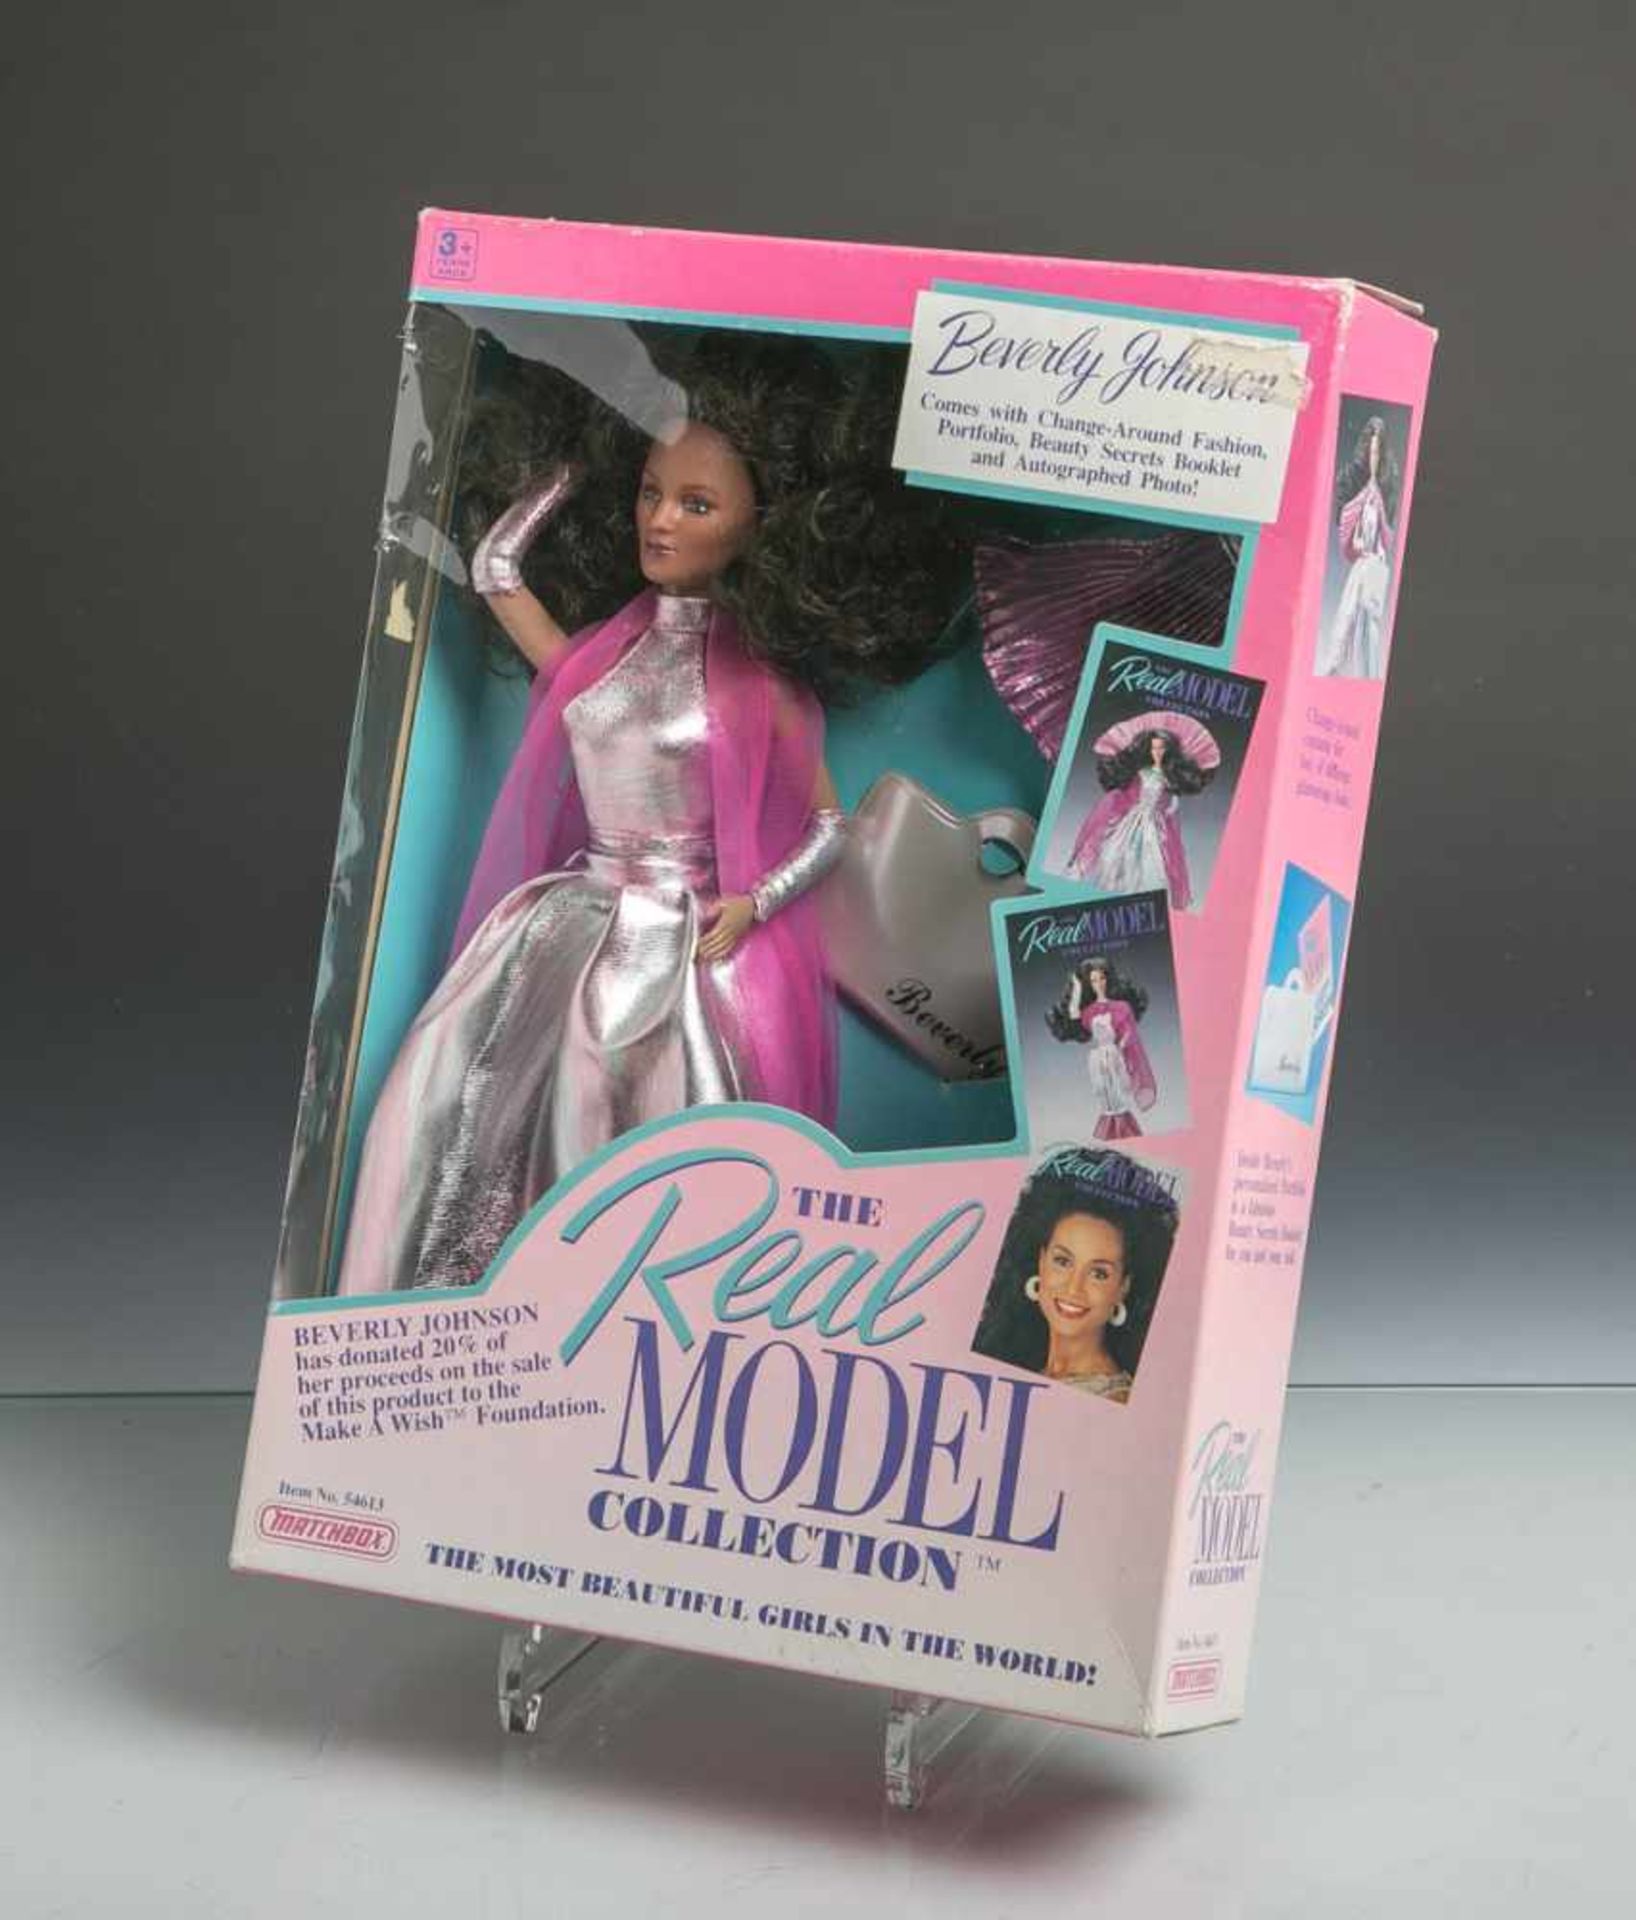 Nachfolgend Sammlung zahlreicher Barbie-Puppen (1940-1990er Jahre), Modelpuppe "BeverlyJohnson" (